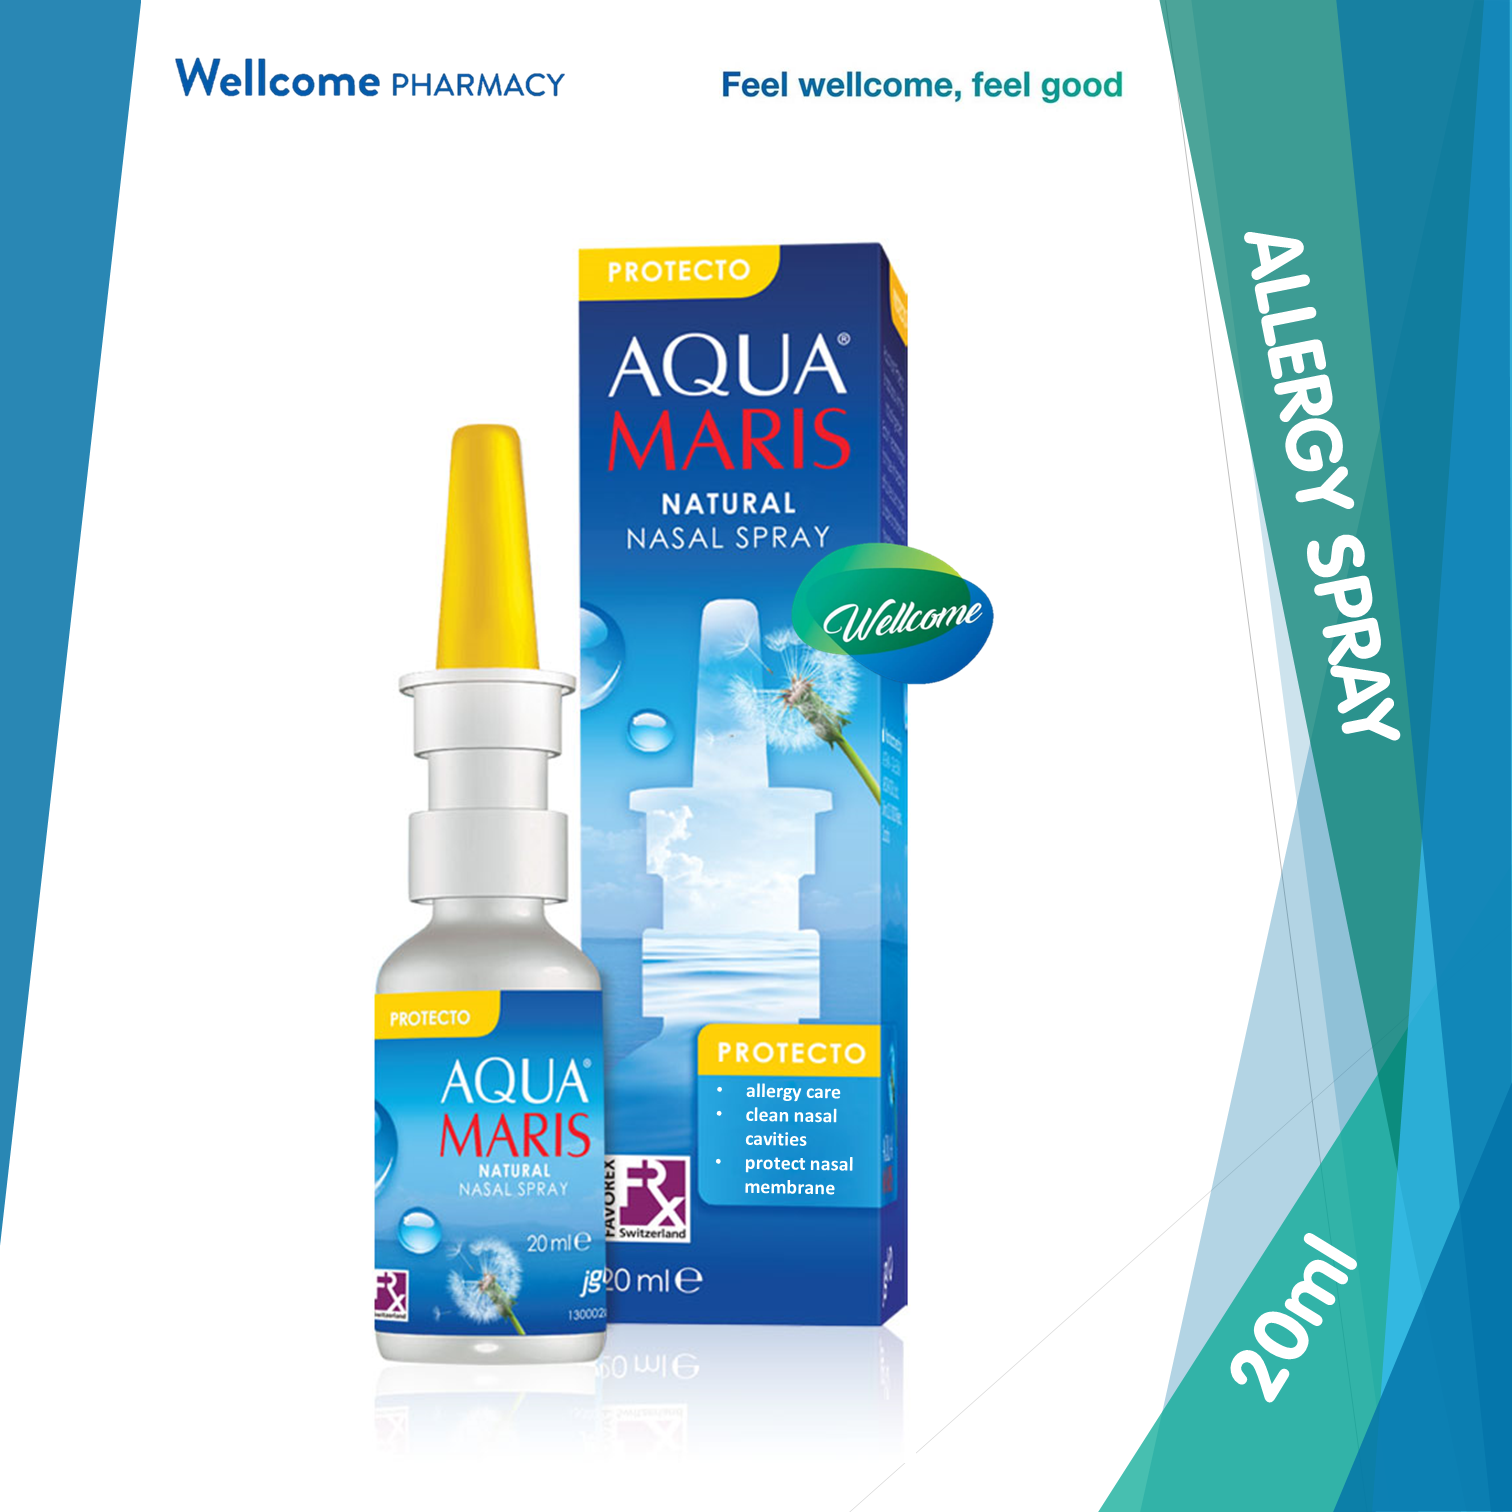 Aqua Maris Protecto Nasal Spray - 20ml.png